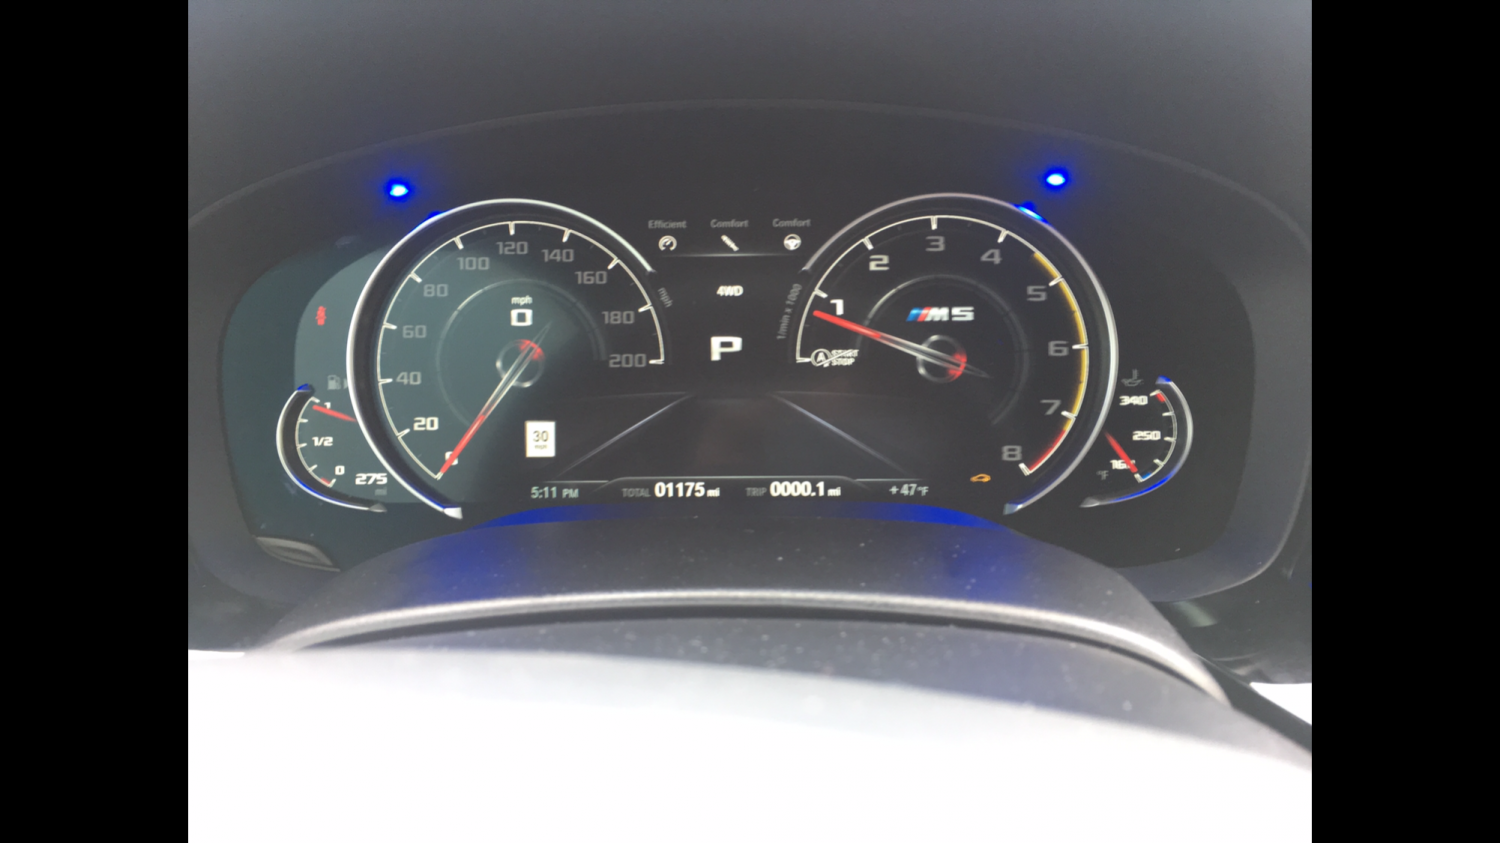 K40 radar detector blue alert leds on a 2018 BMW M5